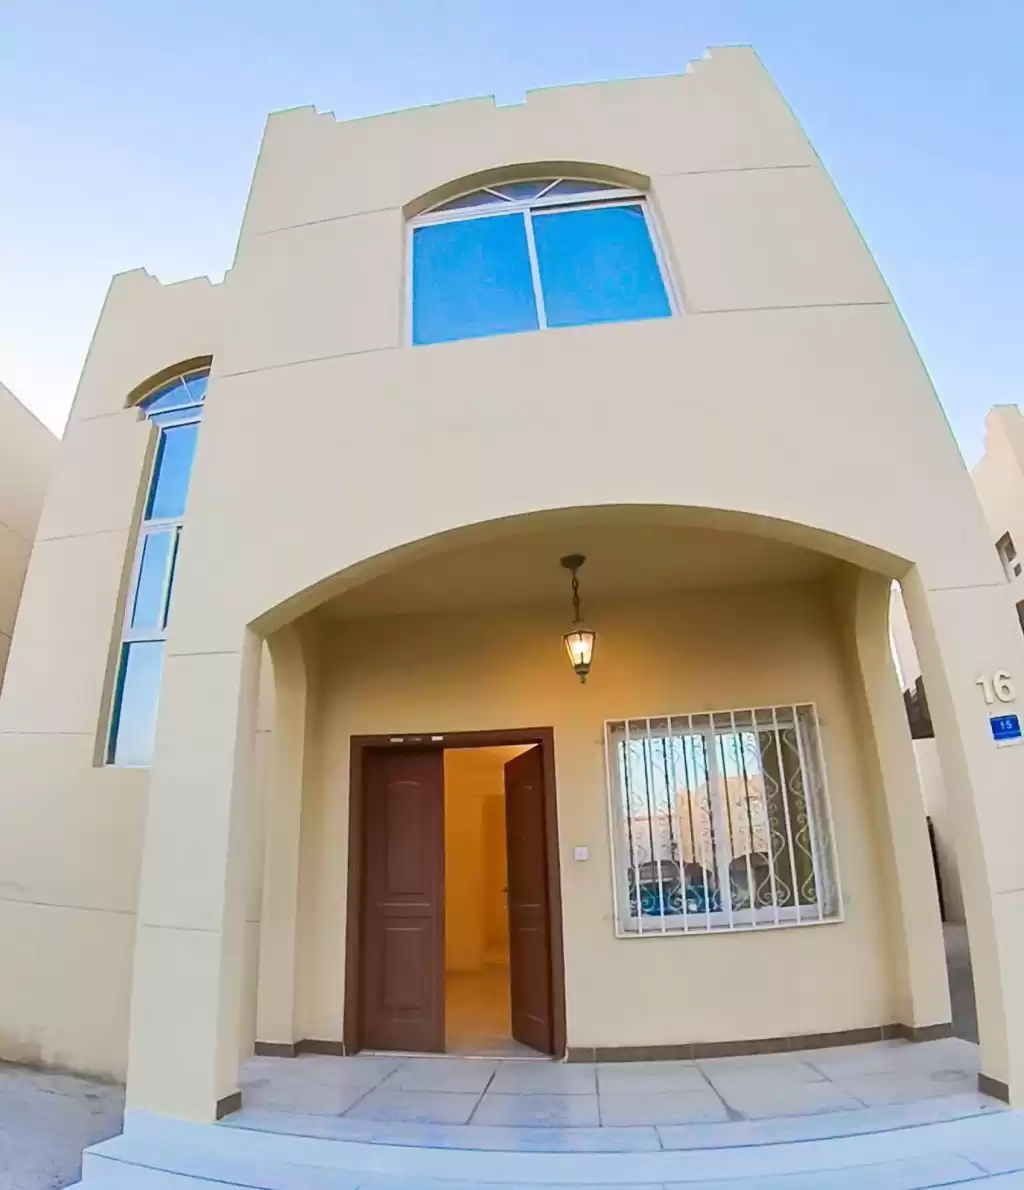 Résidentiel Propriété prête 3 chambres U / f Villa autonome  a louer au Al-Sadd , Doha #18497 - 1  image 